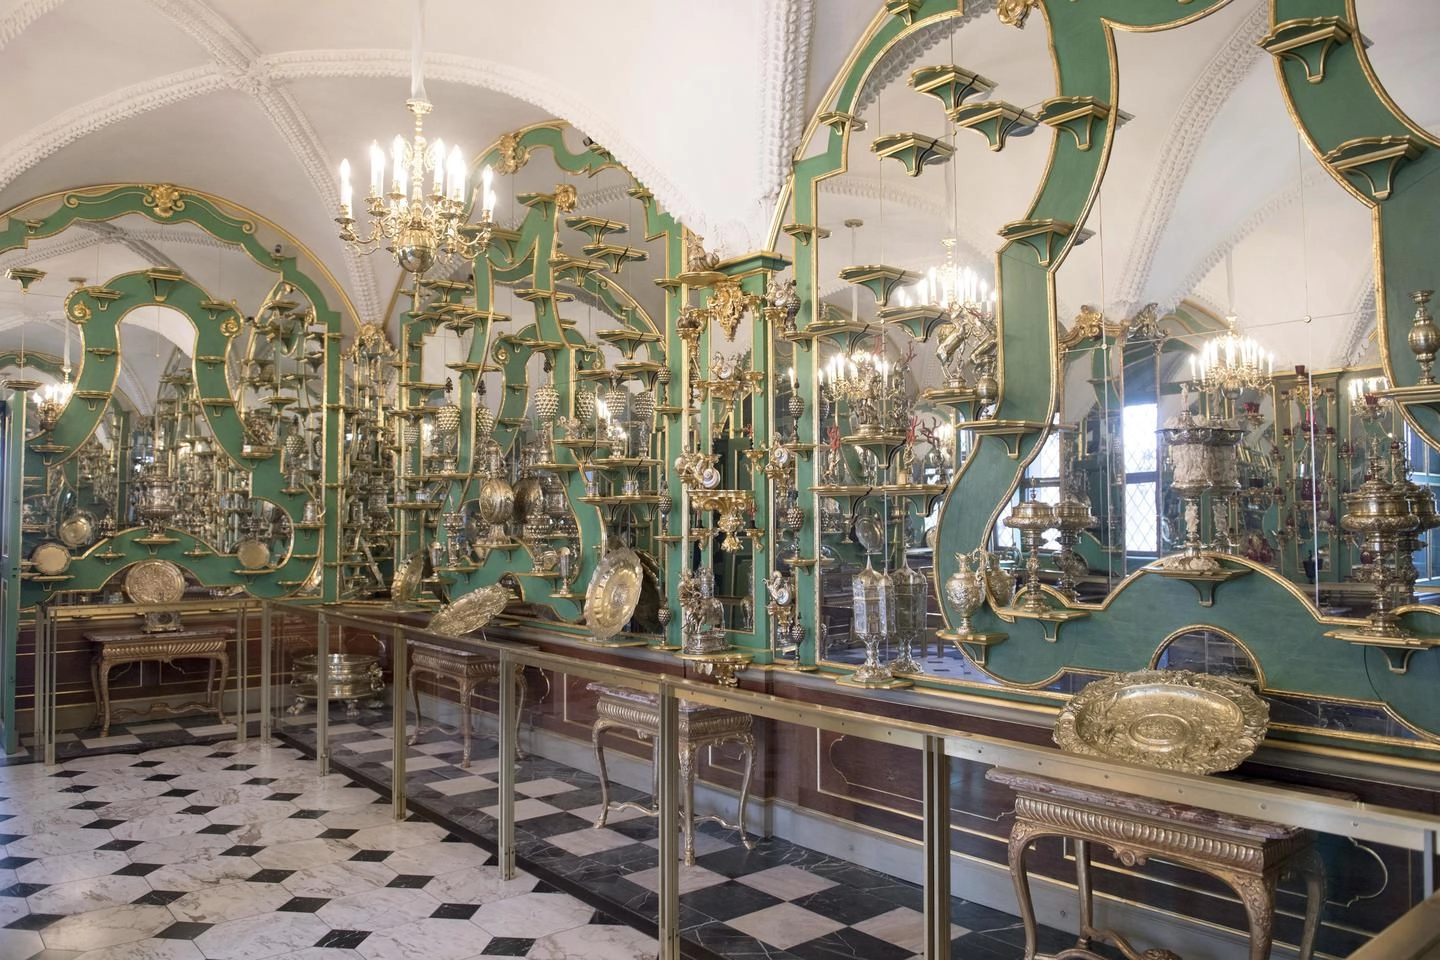 La famosa sala dalle volte verdi del castello di Dresda (Ansa)